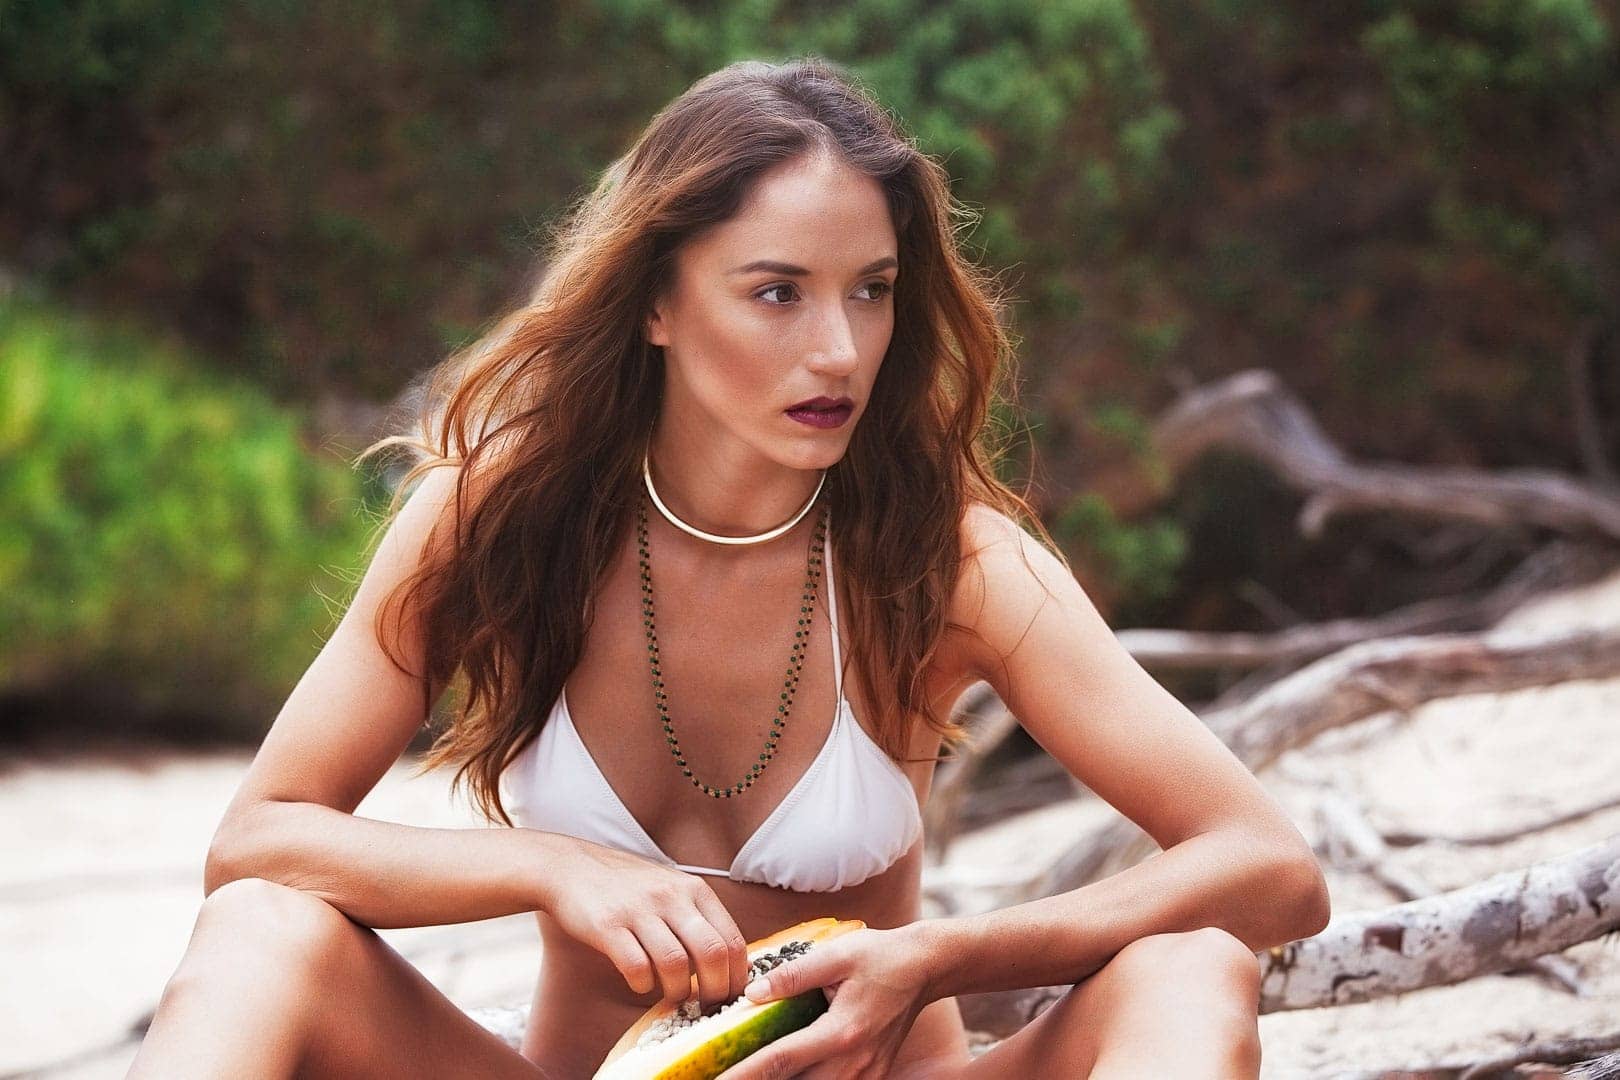 fotografia de modelo posando para marca de bikini jugando con un fruto exotico sentada en las playas de salinas de ibiza